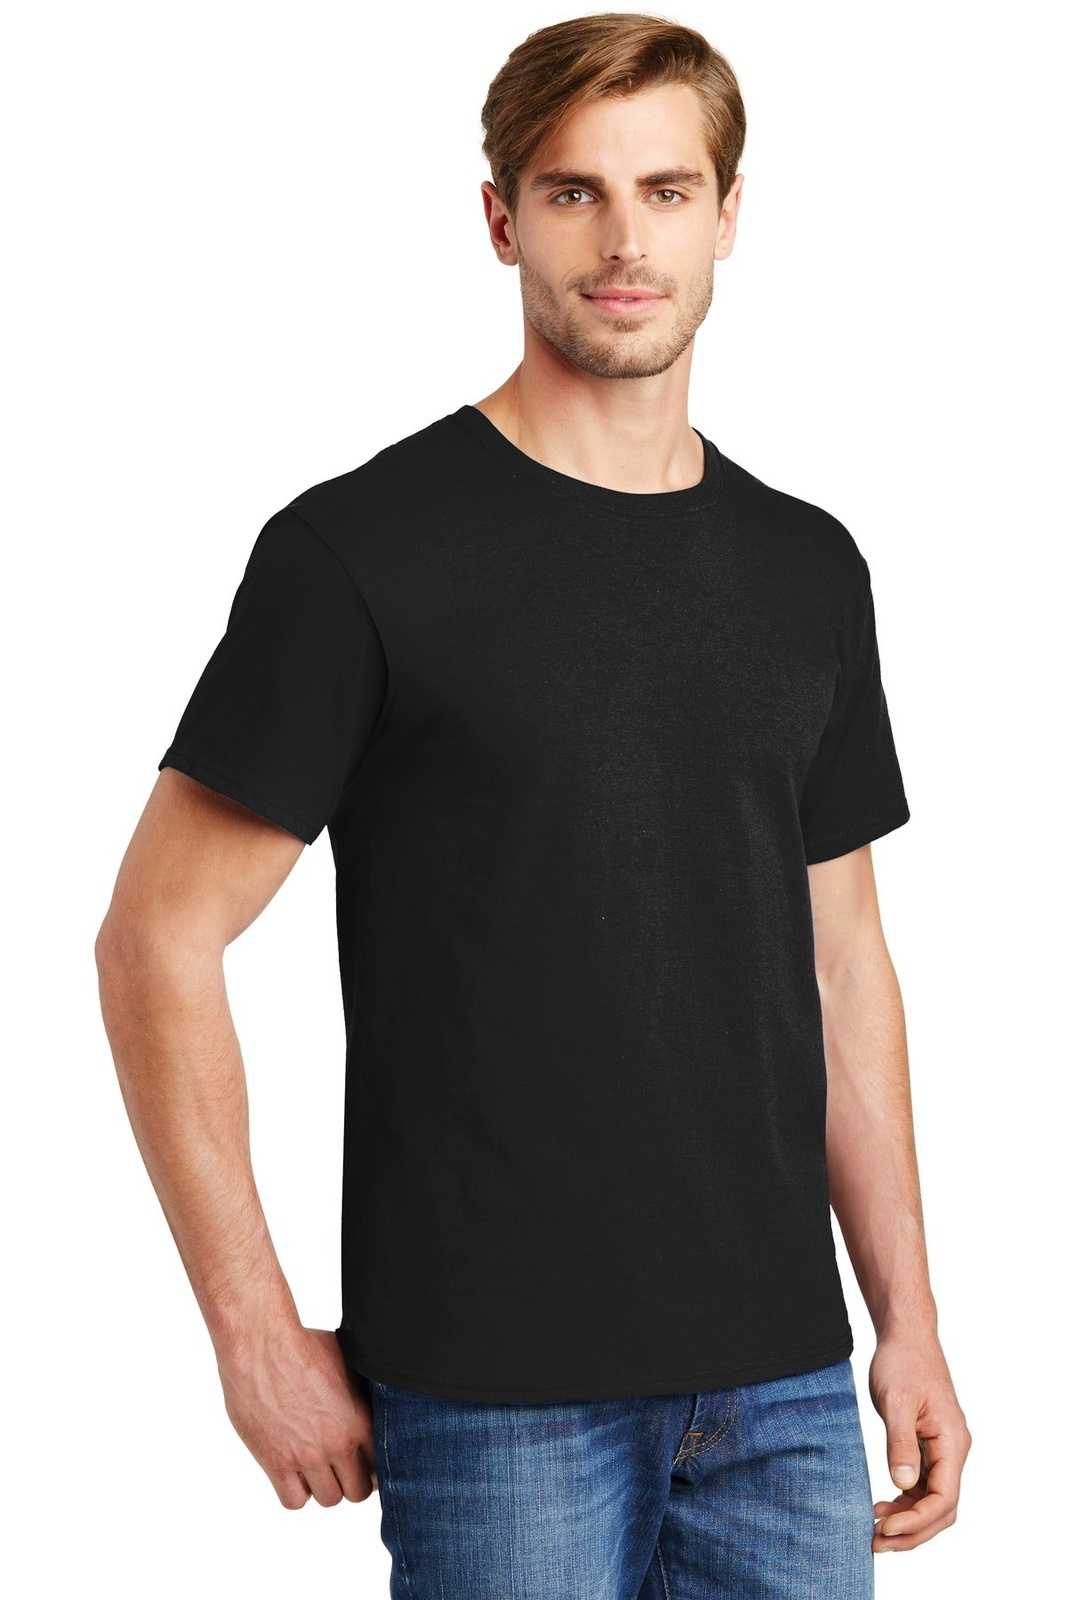 Hanes 5280 Comfortsoft 100% Cotton T-Shirt - Black - HIT a Double